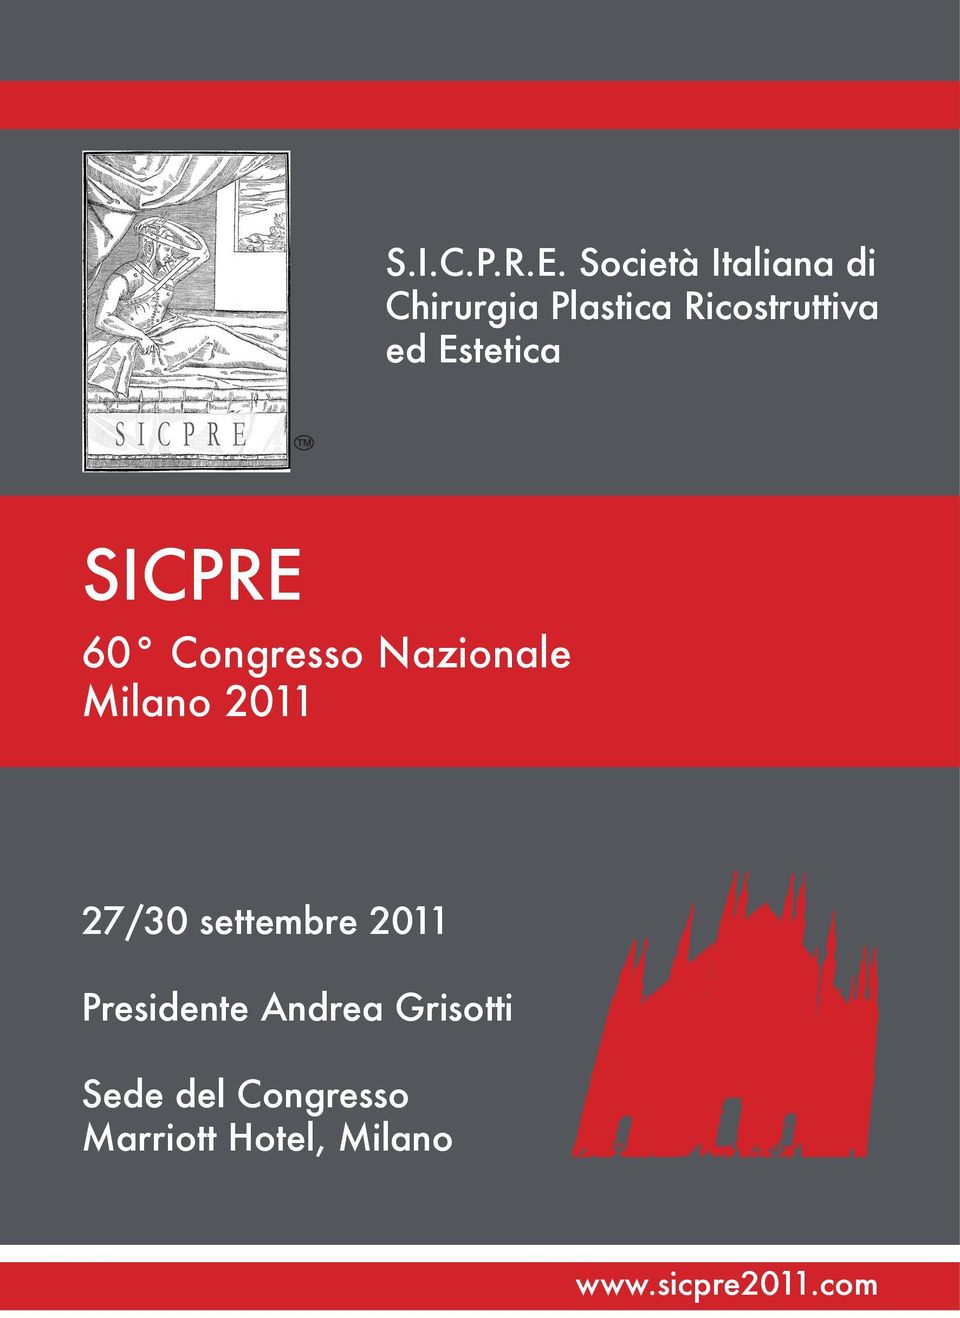 Estetica SICPRE 60 Congresso Nazionale Milano 2011 27/30